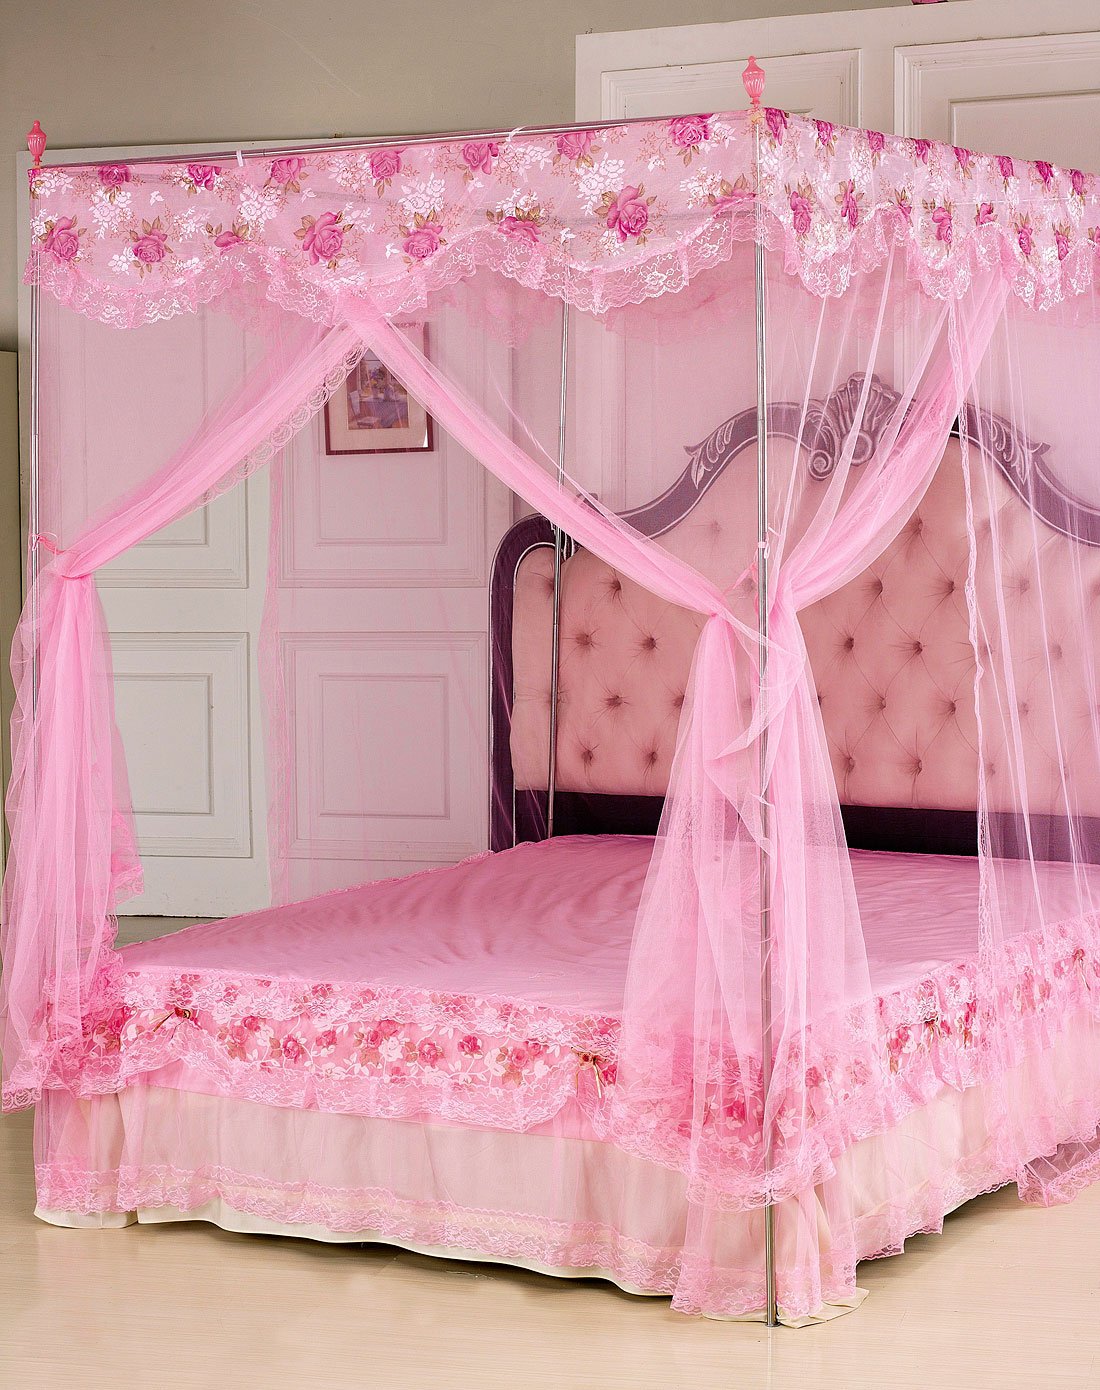 Кровати для девочек, купить детскую кровать для девочки в Минске под заказ - фото